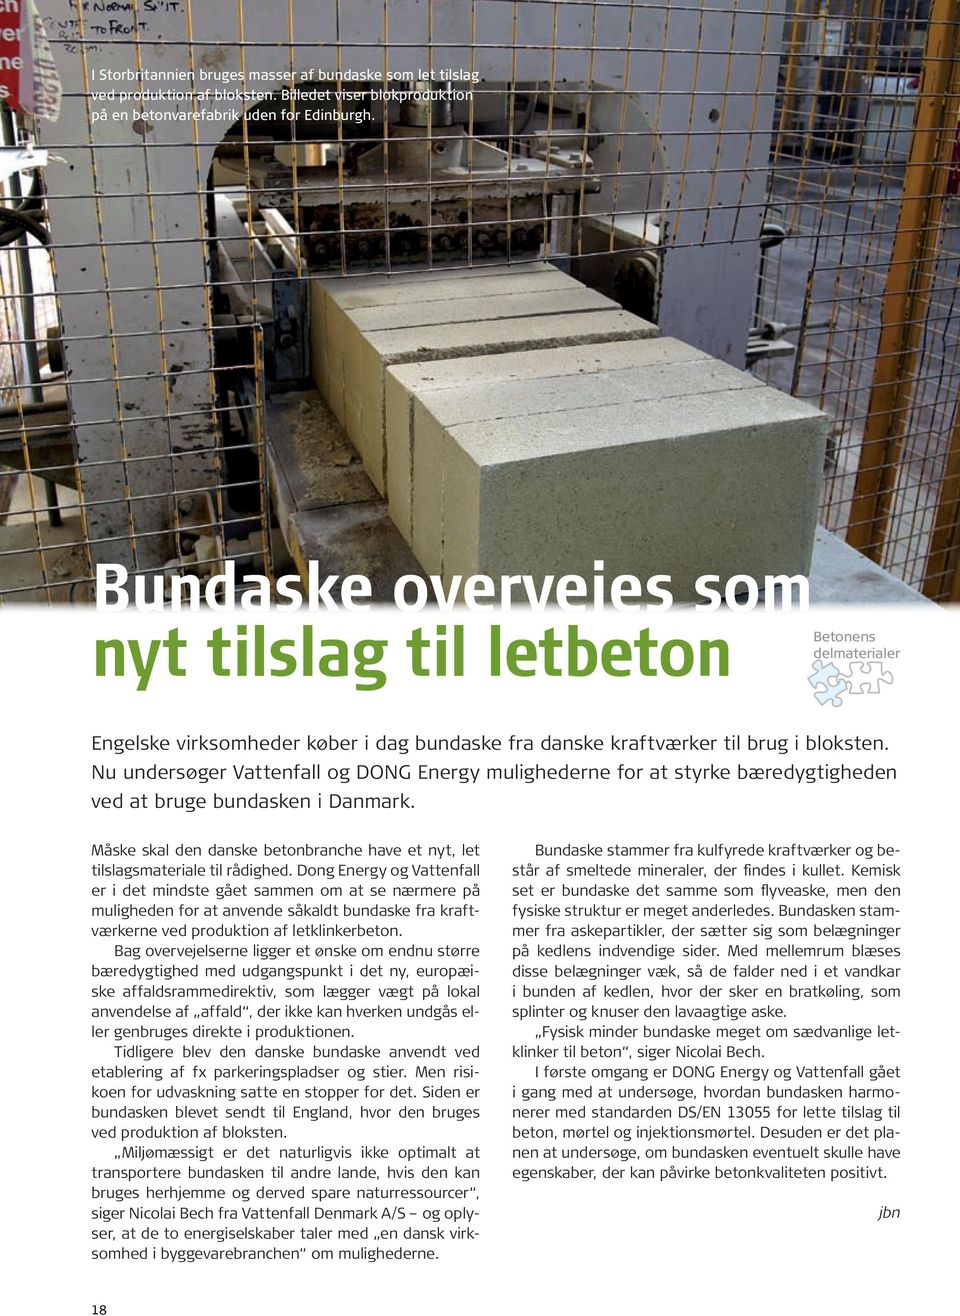 Nu undersøger Vattenfall og DONG Energy mulighederne for at styrke bæredygtigheden ved at bruge bundasken i Danmark. Måske skal den danske betonbranche have et nyt, let tilslagsmateriale til rådighed.